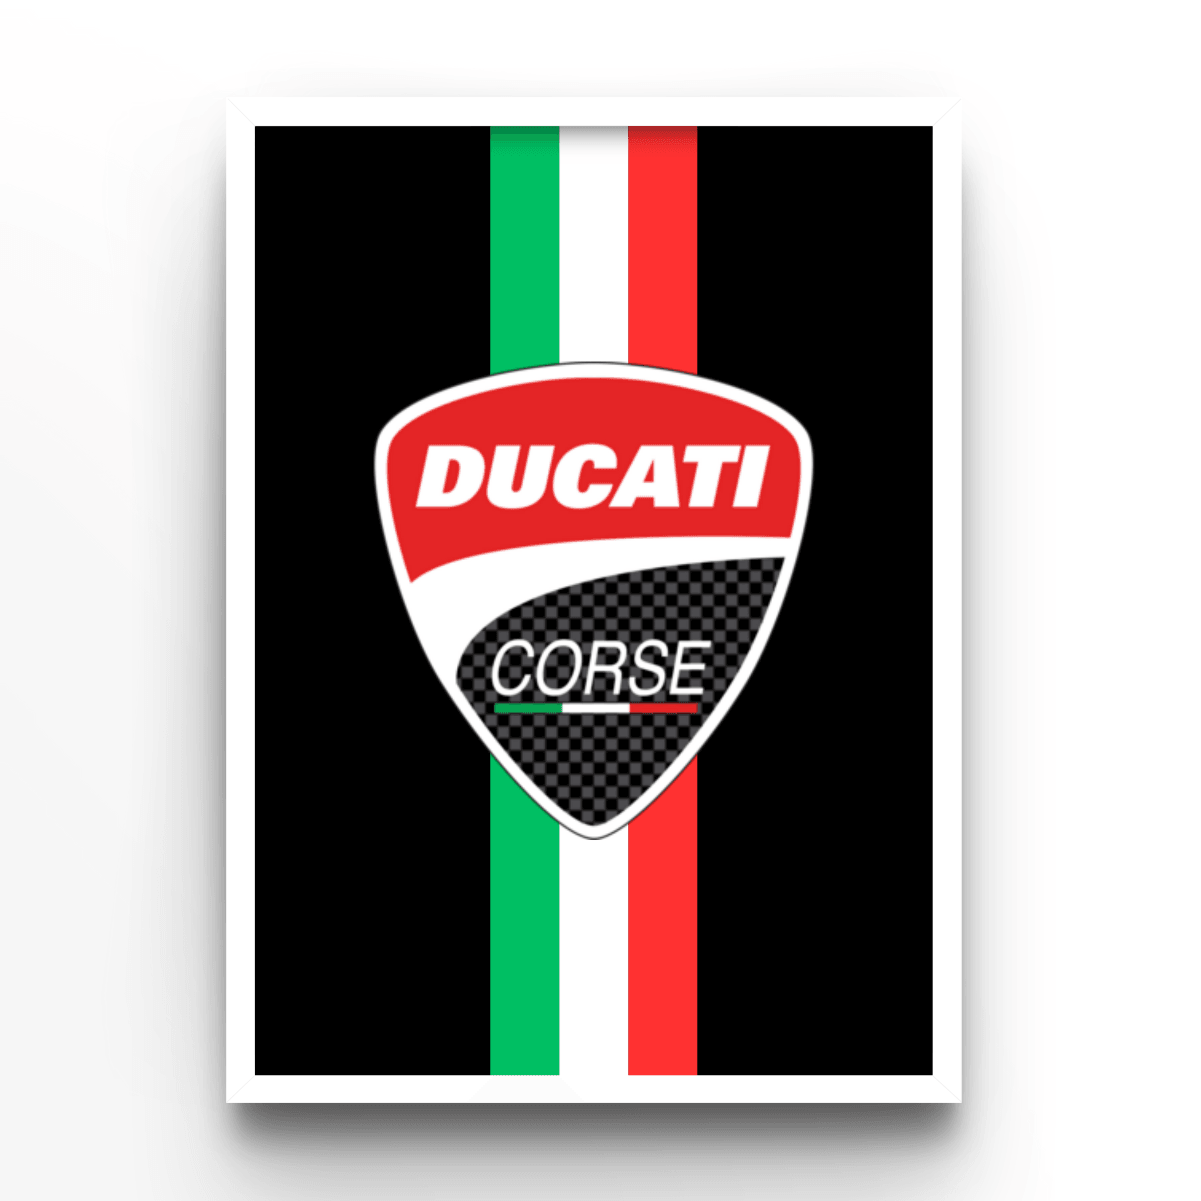 Ducati Corse - A4, A3, A2 Posters Base - Poster Print Shop / Art Prints / PostersBase